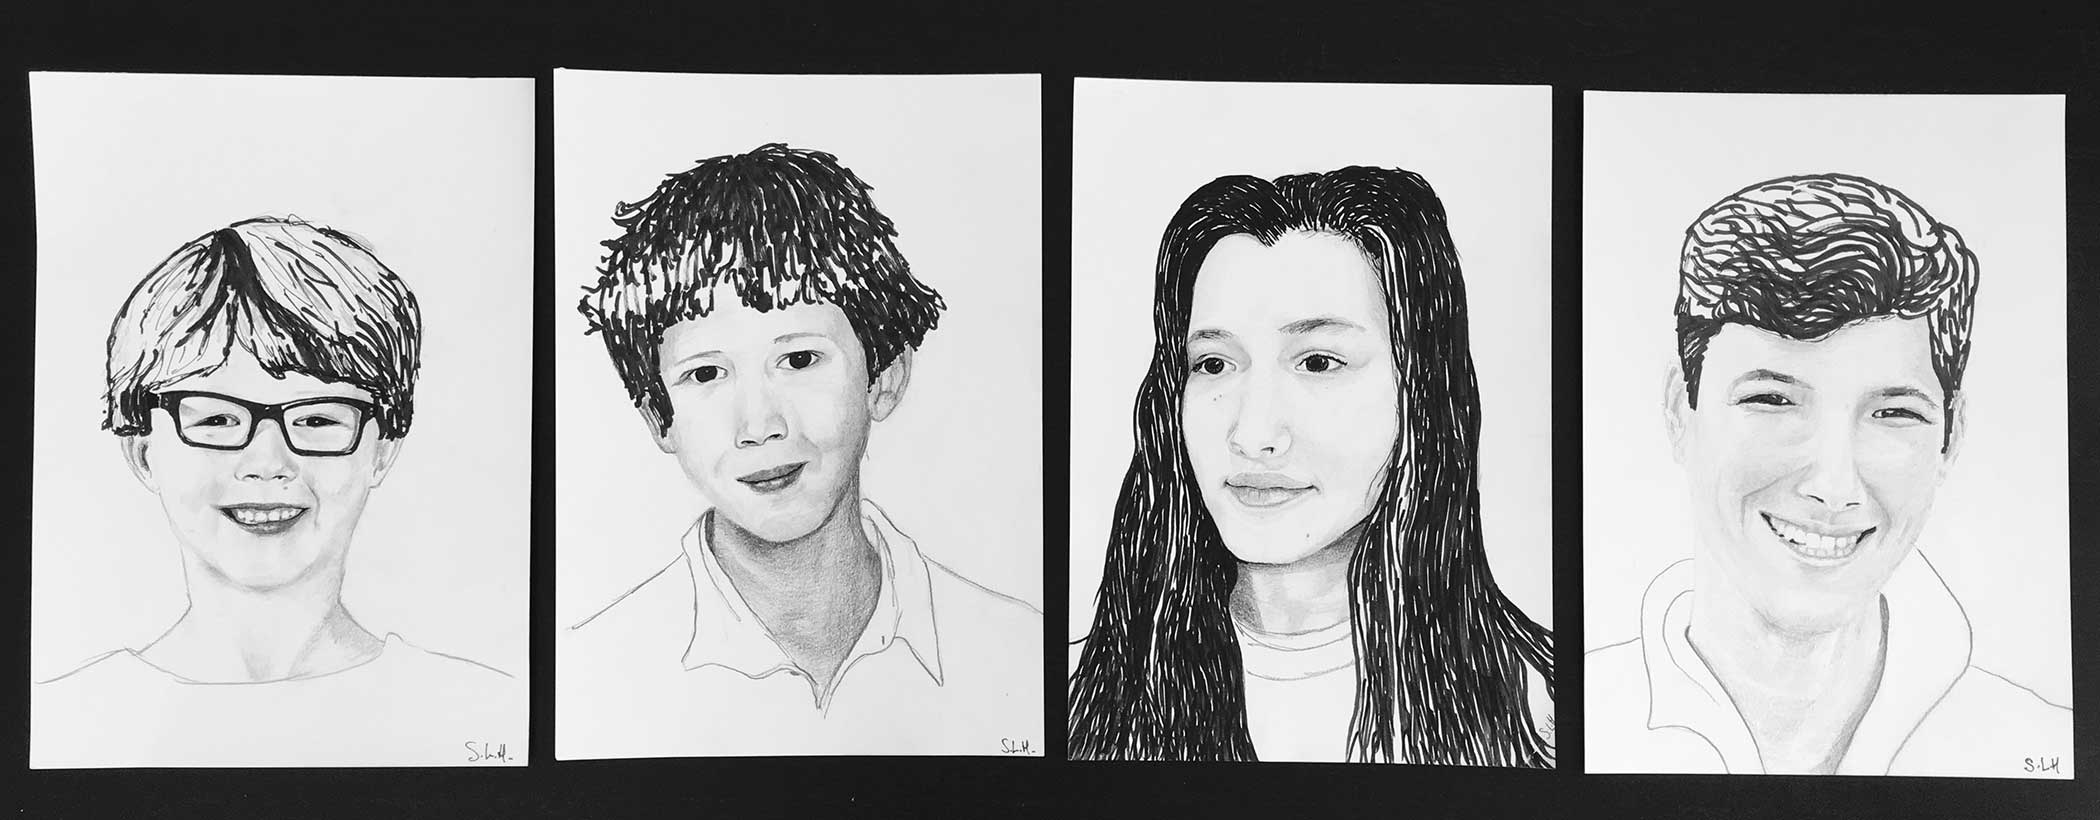 Enfants Encre et graphite sur 4 x papier A4 (24cm x 29,7cm) 2017